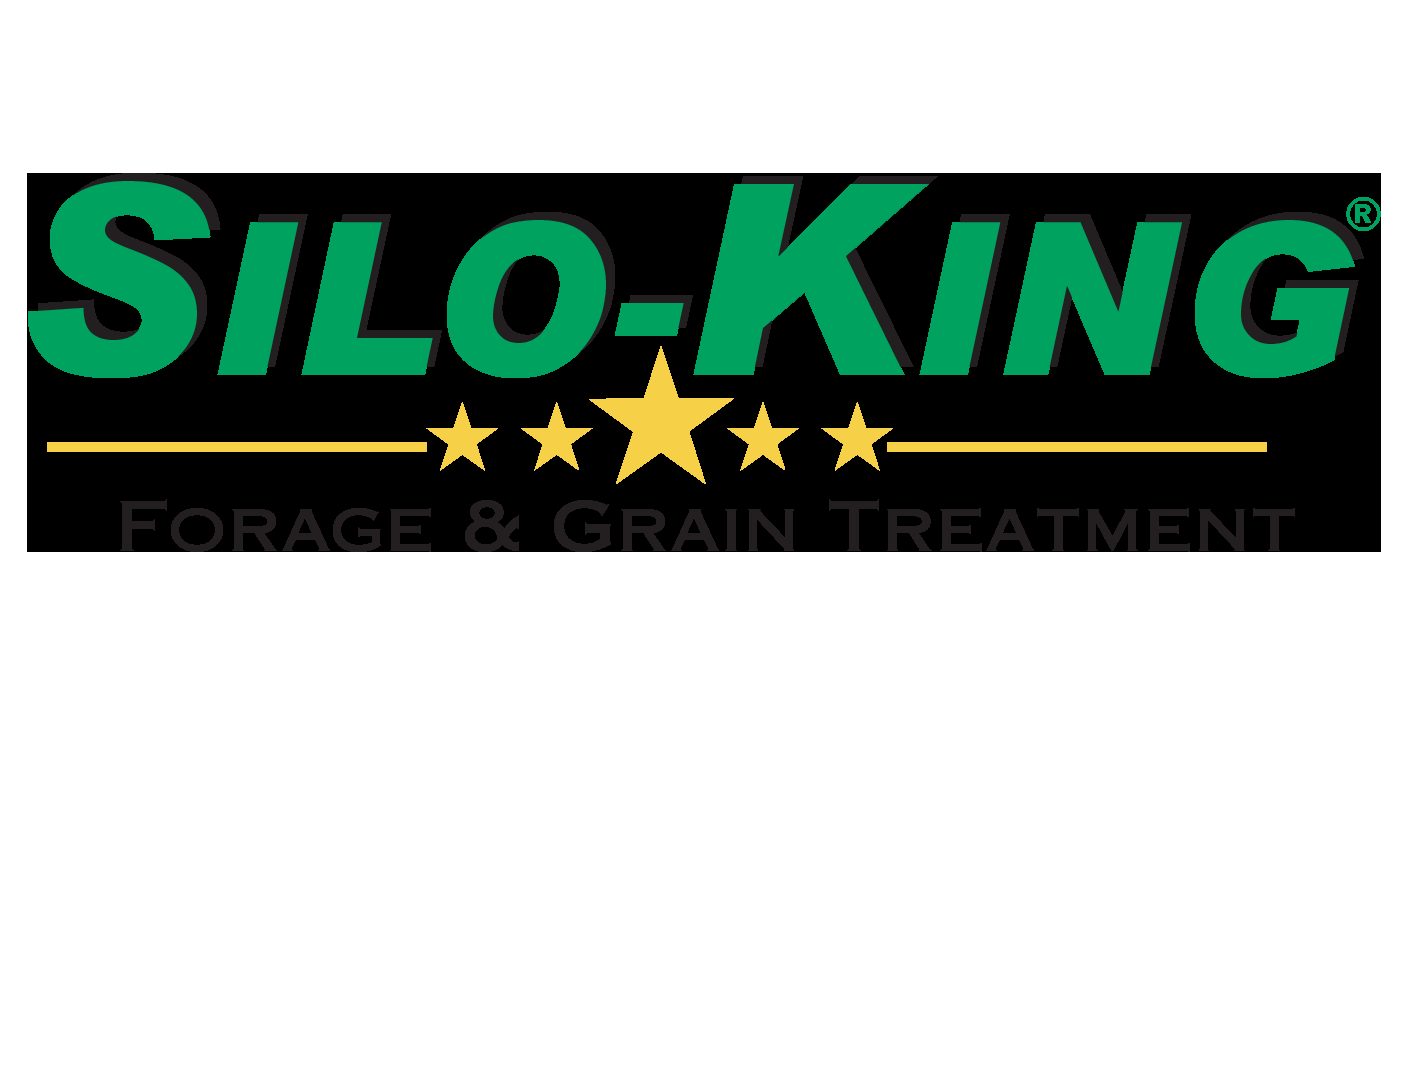 Silo King Forage Treatment